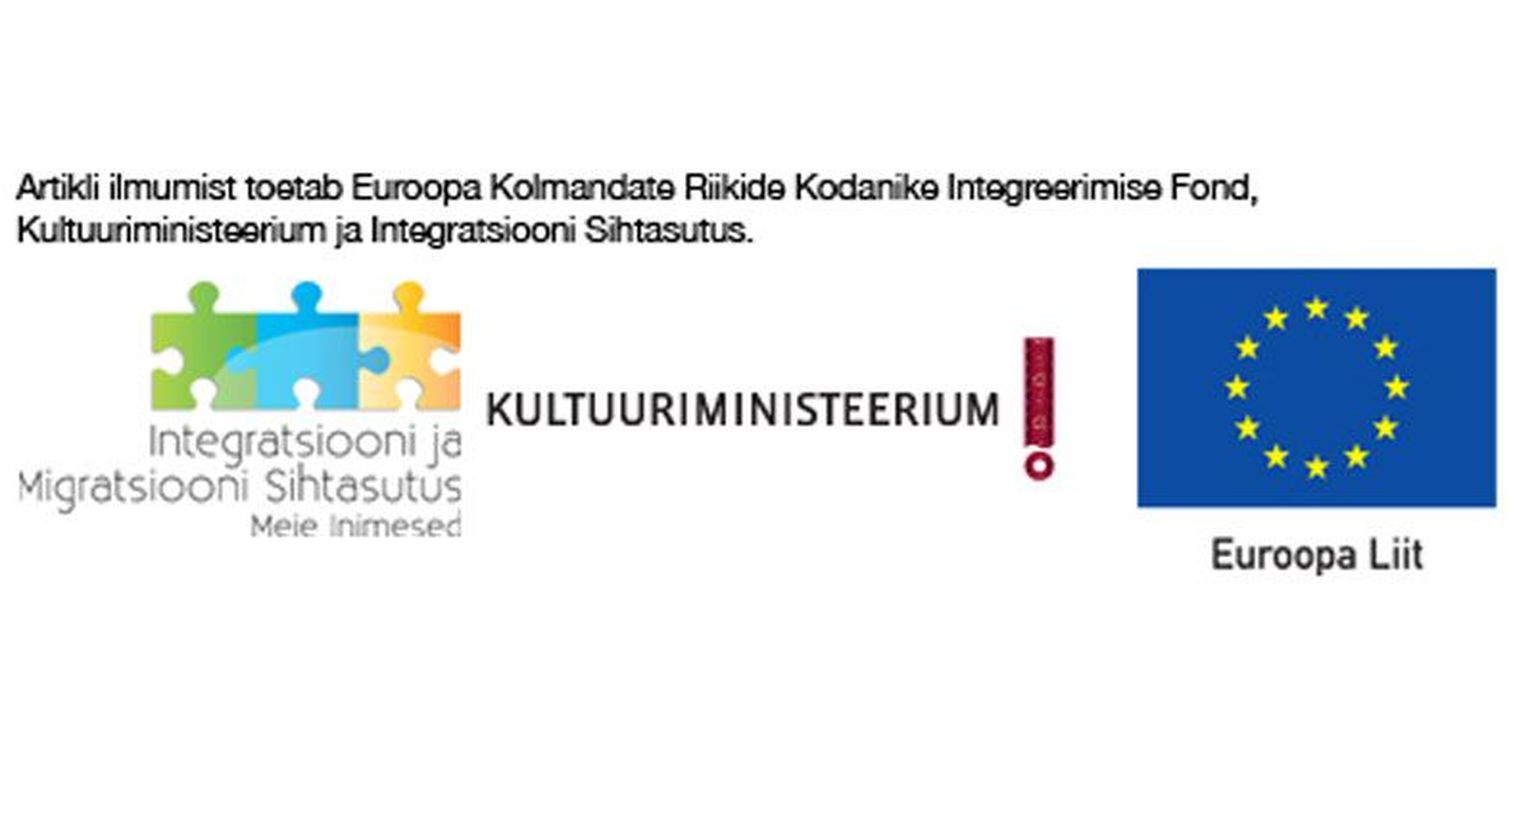 Loo ilmumist toetavad Euroopa Kolmandate Riikide Kodanike Integreerimise Fond, Integratsiooni ja Migratsiooni Sihtasutus Meie Inimesed ja kultuuriministeerium